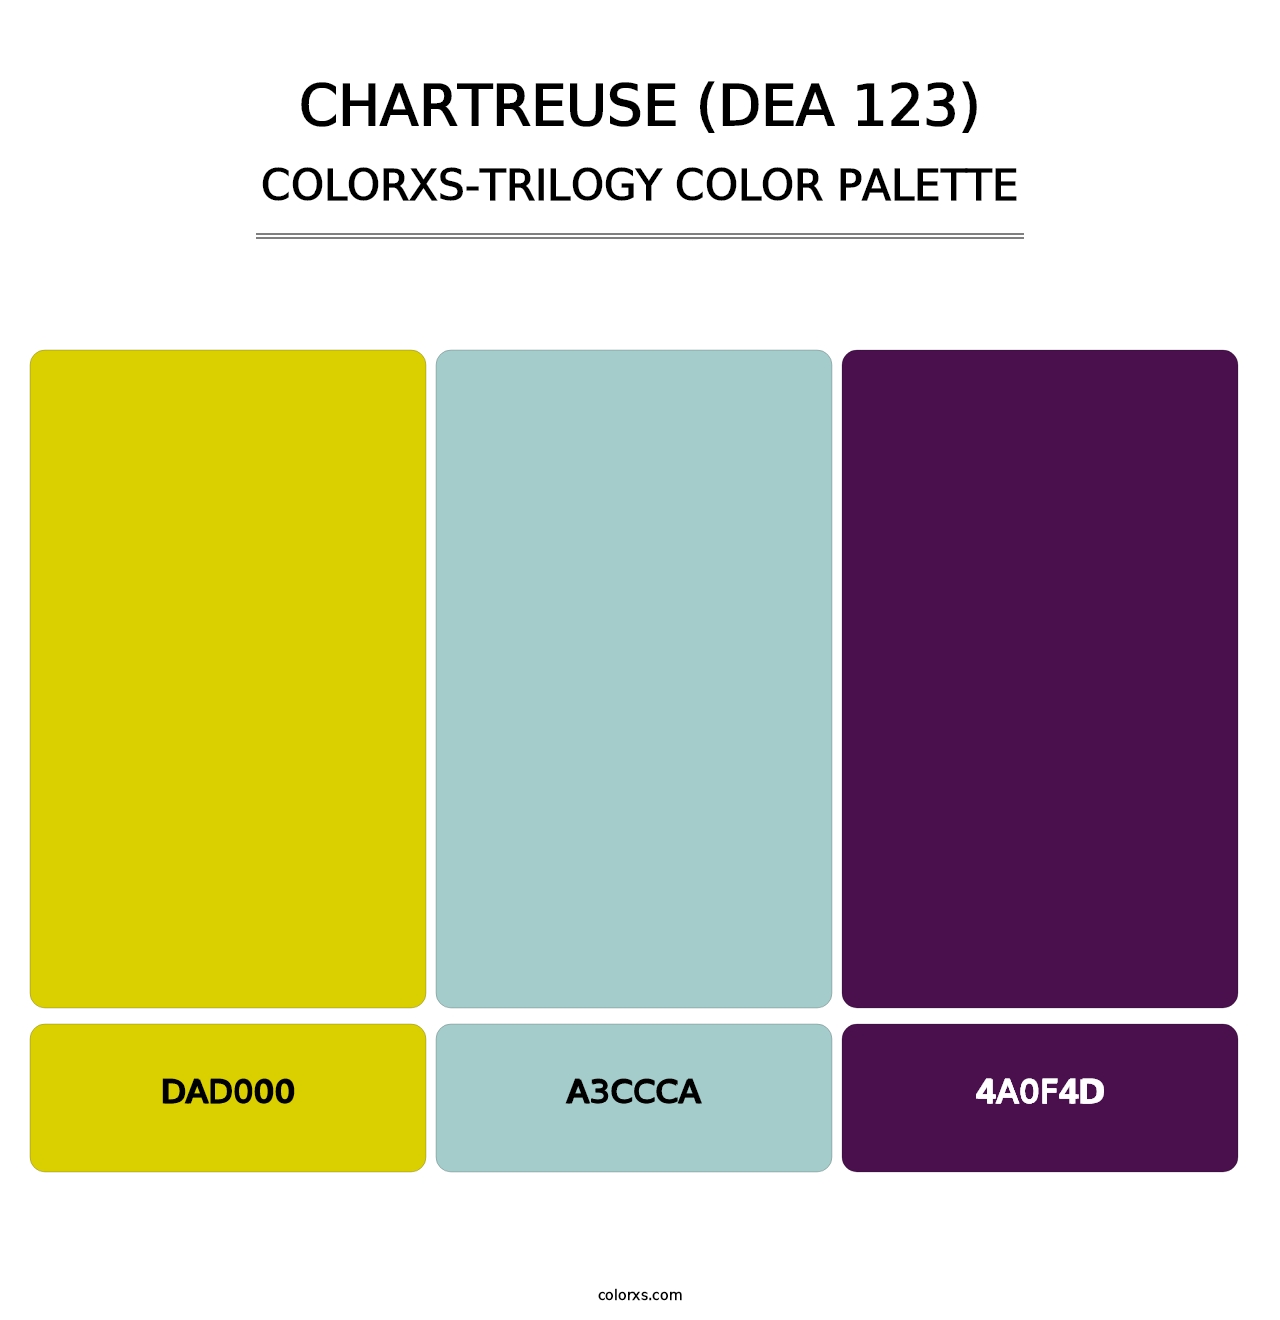 Chartreuse (DEA 123) - Colorxs Trilogy Palette